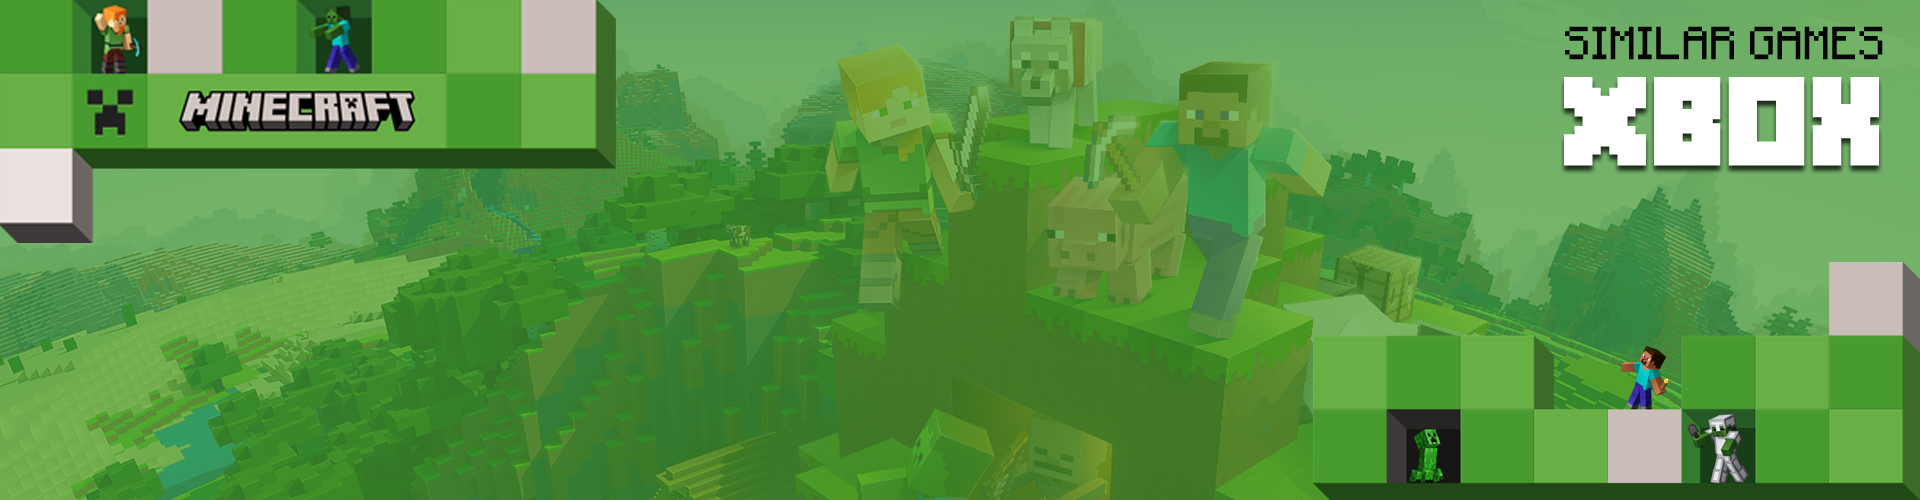 I Migliori Giochi Come Minecraft per Xbox